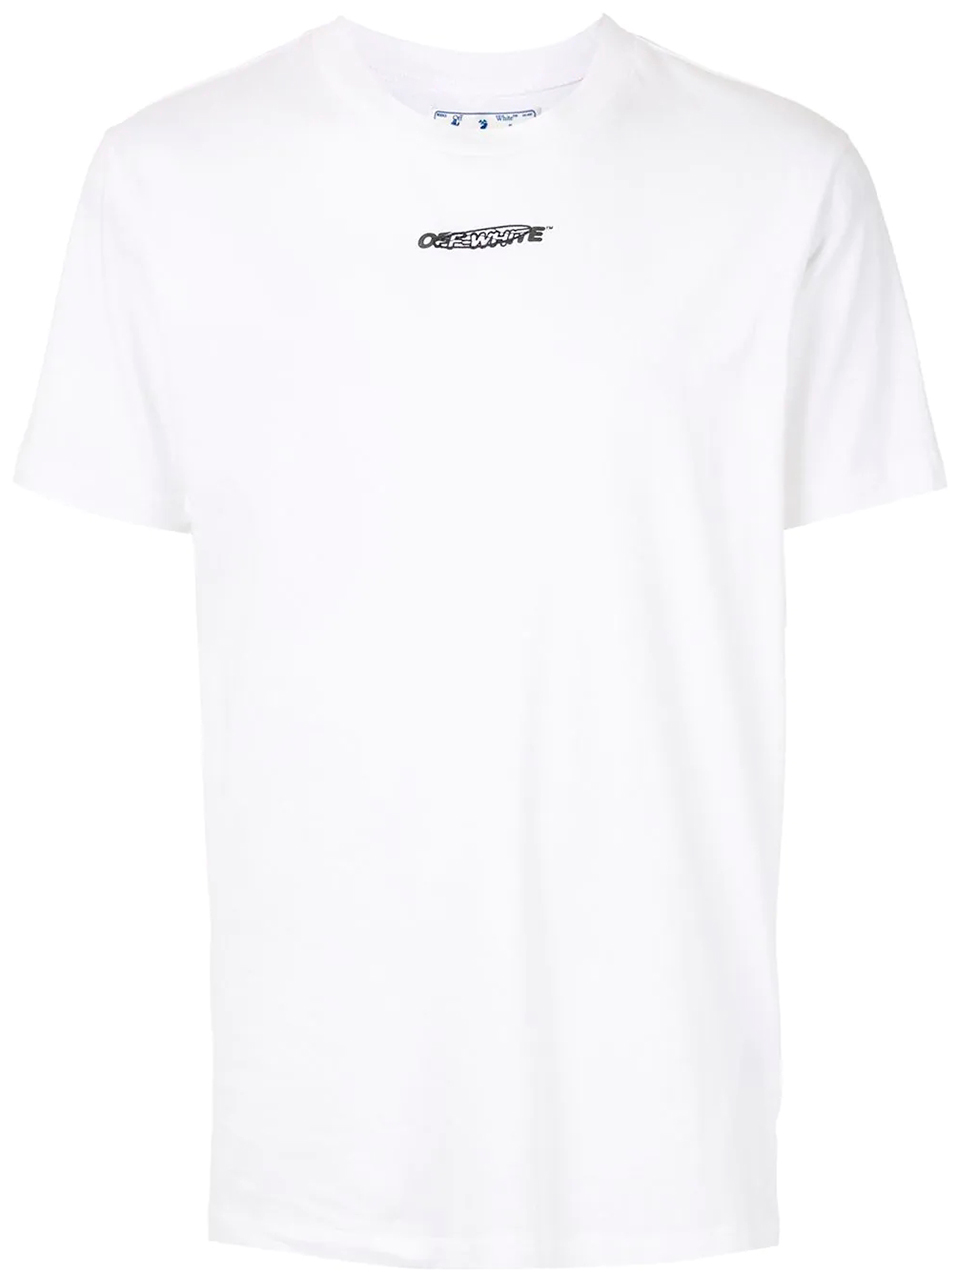 Imagem de: Camiseta Off-White Worker Branca